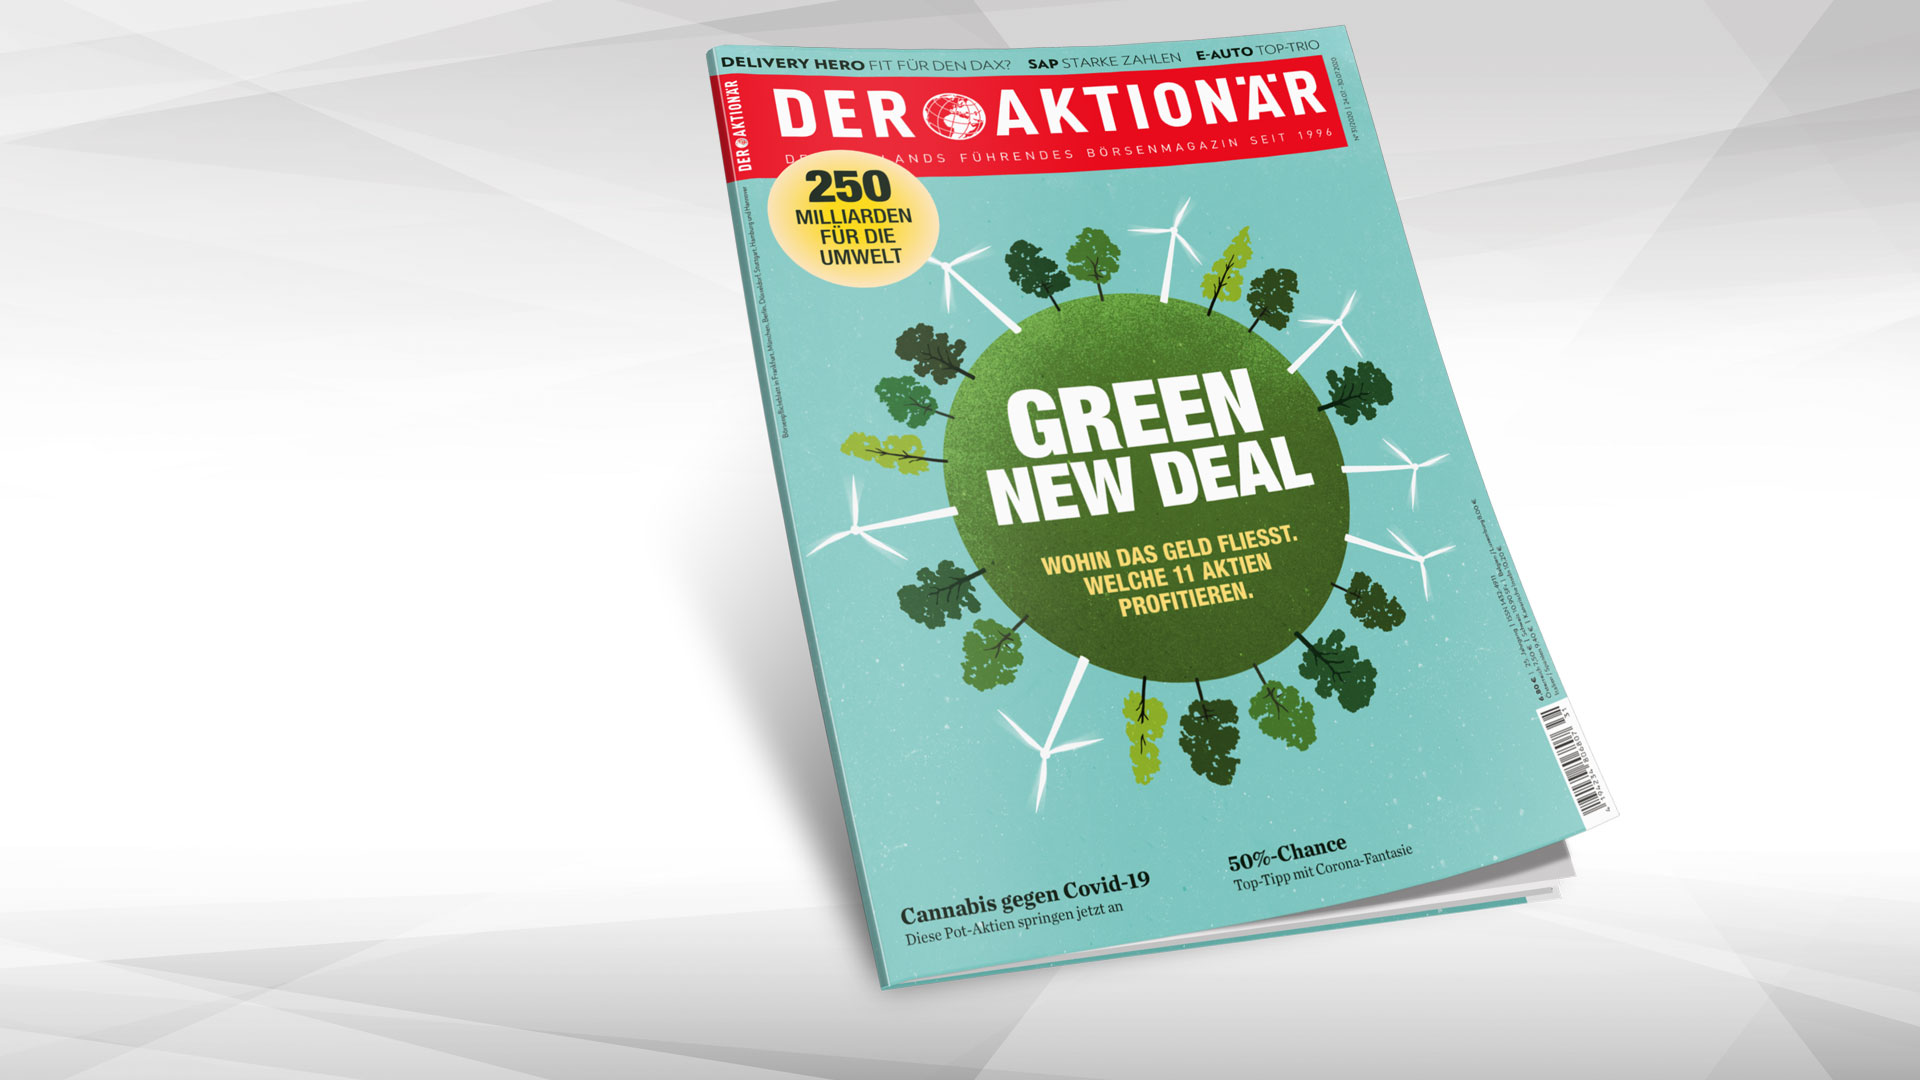 Green New Deal Wohin Das Geld Fliesst Welche 11 Aktien Profitieren Der Aktionar